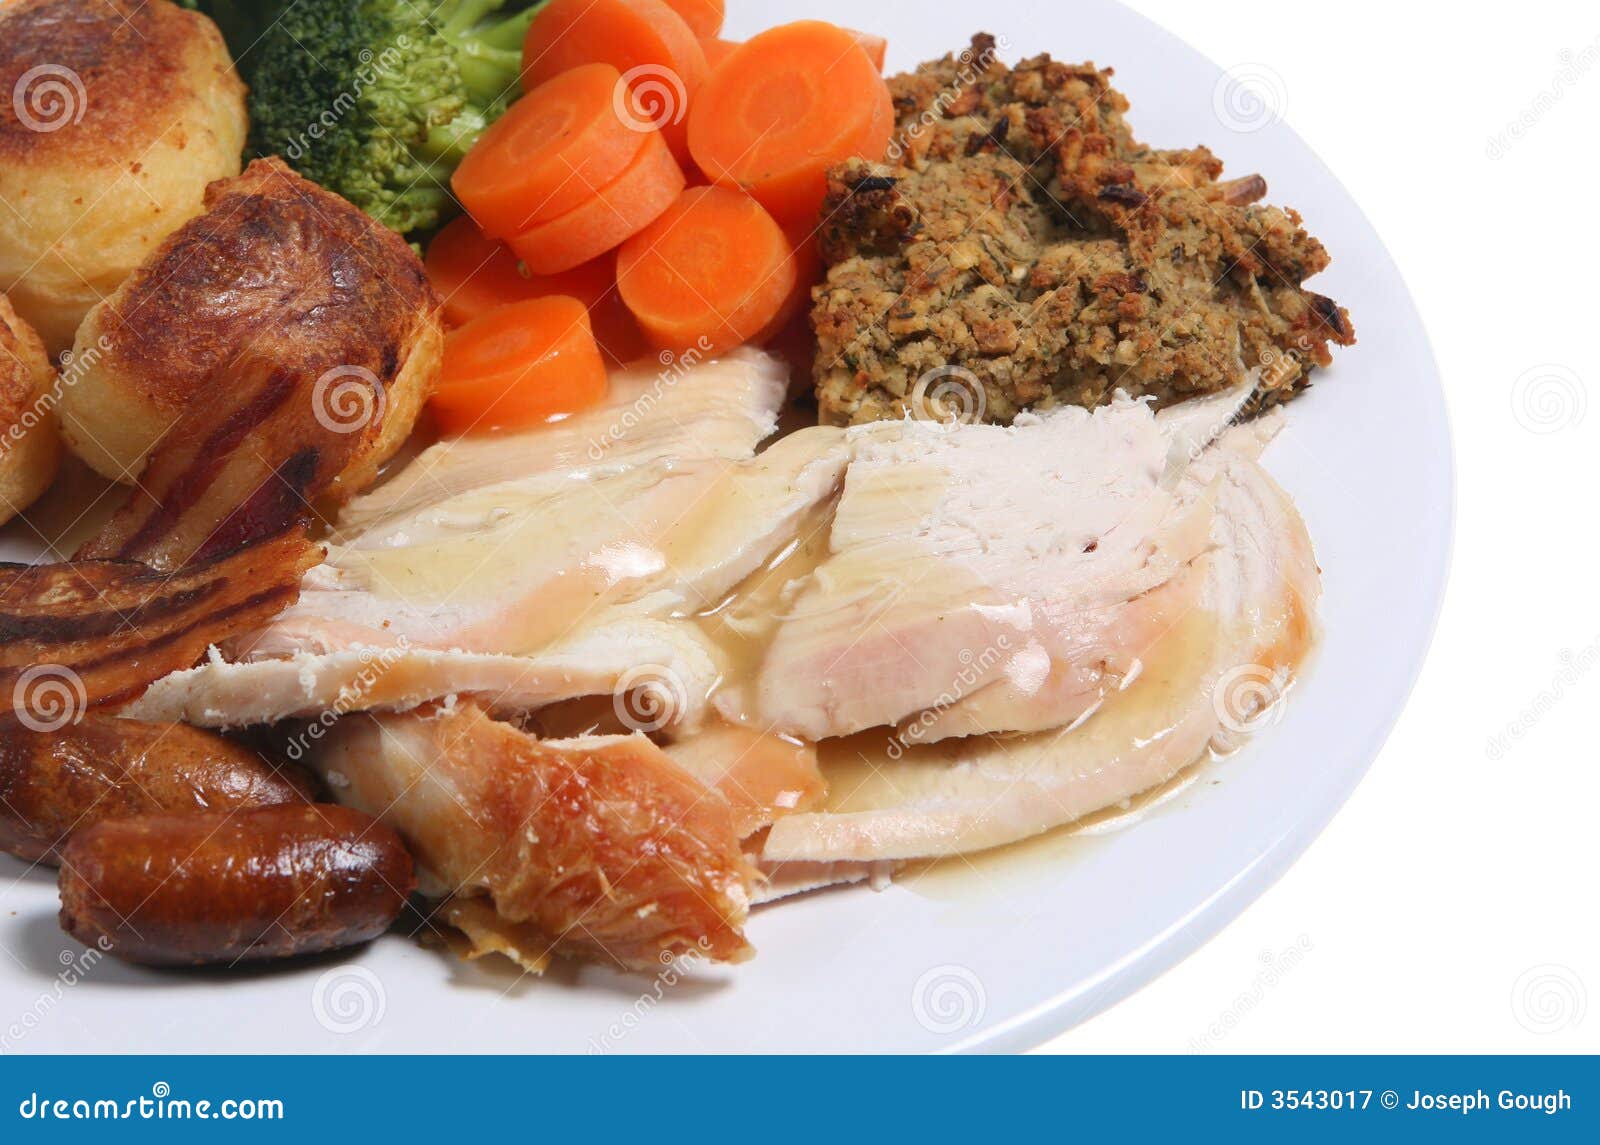 Roast Chicken Dinner stock image. Image of dinner, refreshment - 3543017